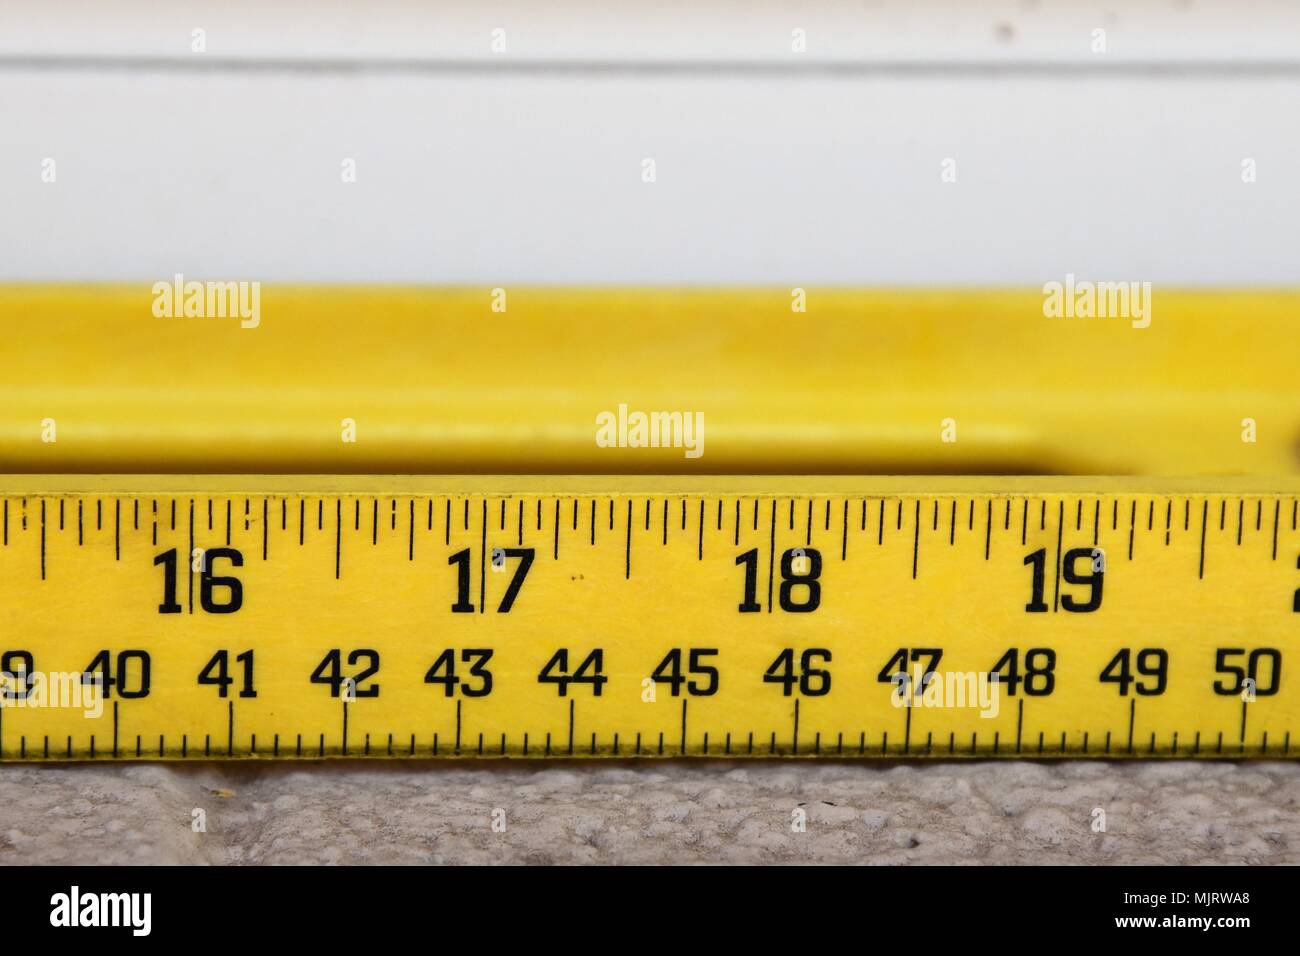 Criterio de medida en pulgadas y centímetros Fotografía de stock - Alamy